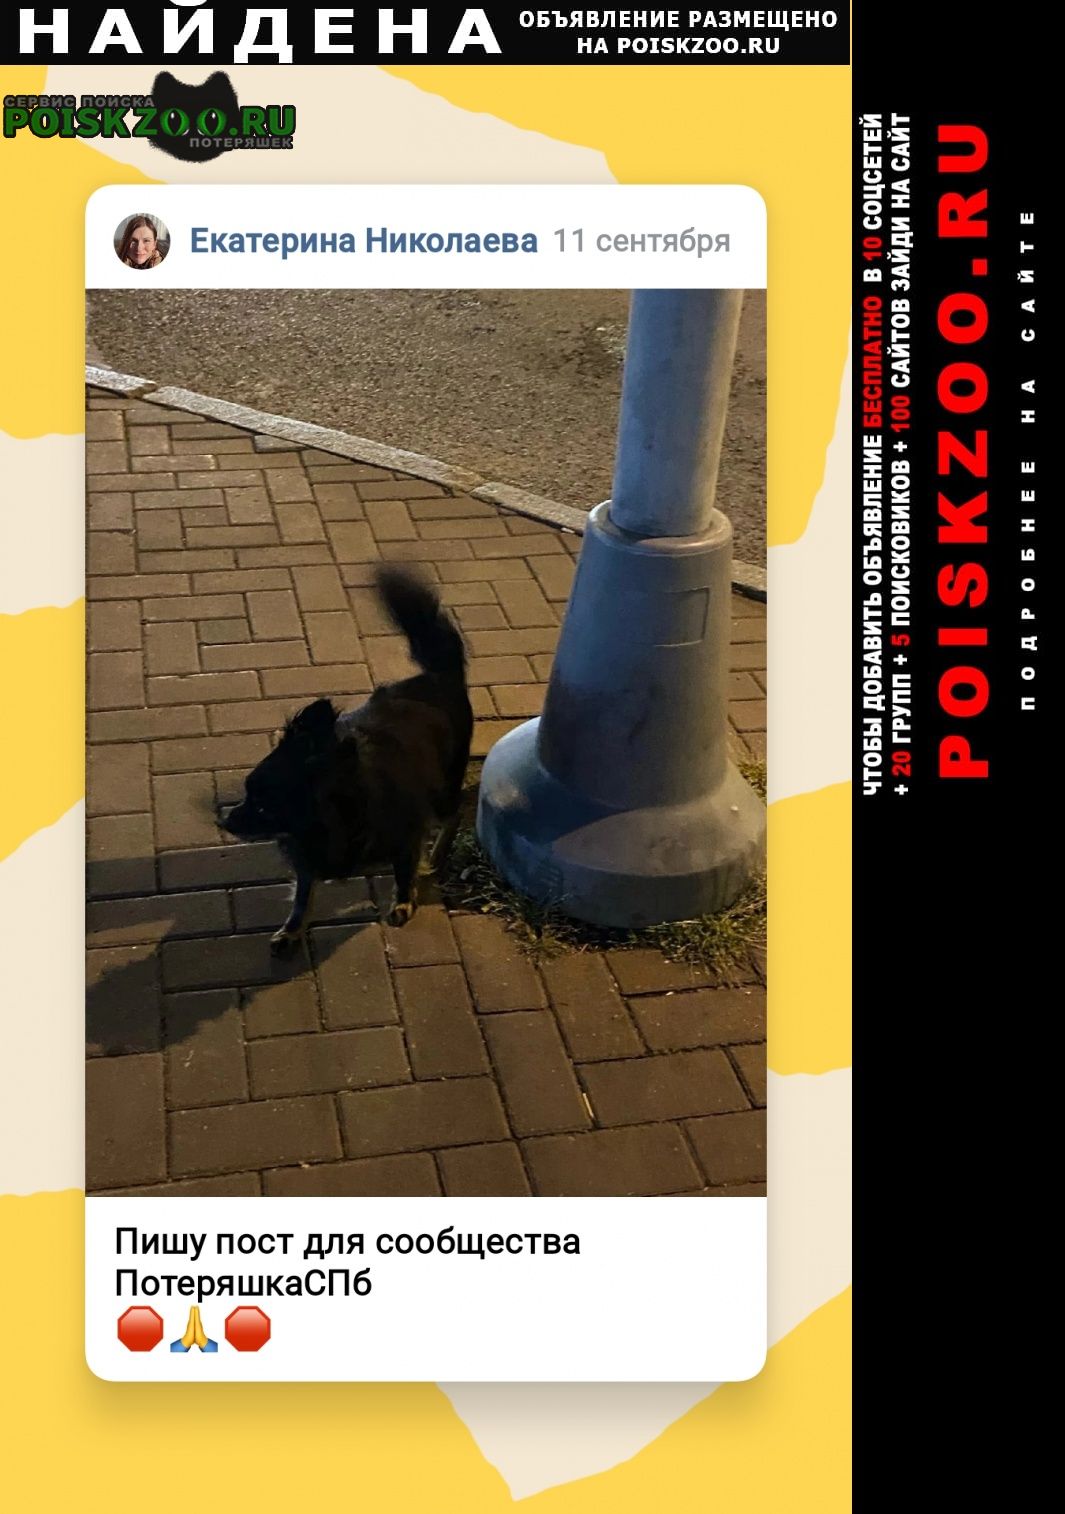 Найдена собака чёрный шпиц в центре спб Санкт-Петербург